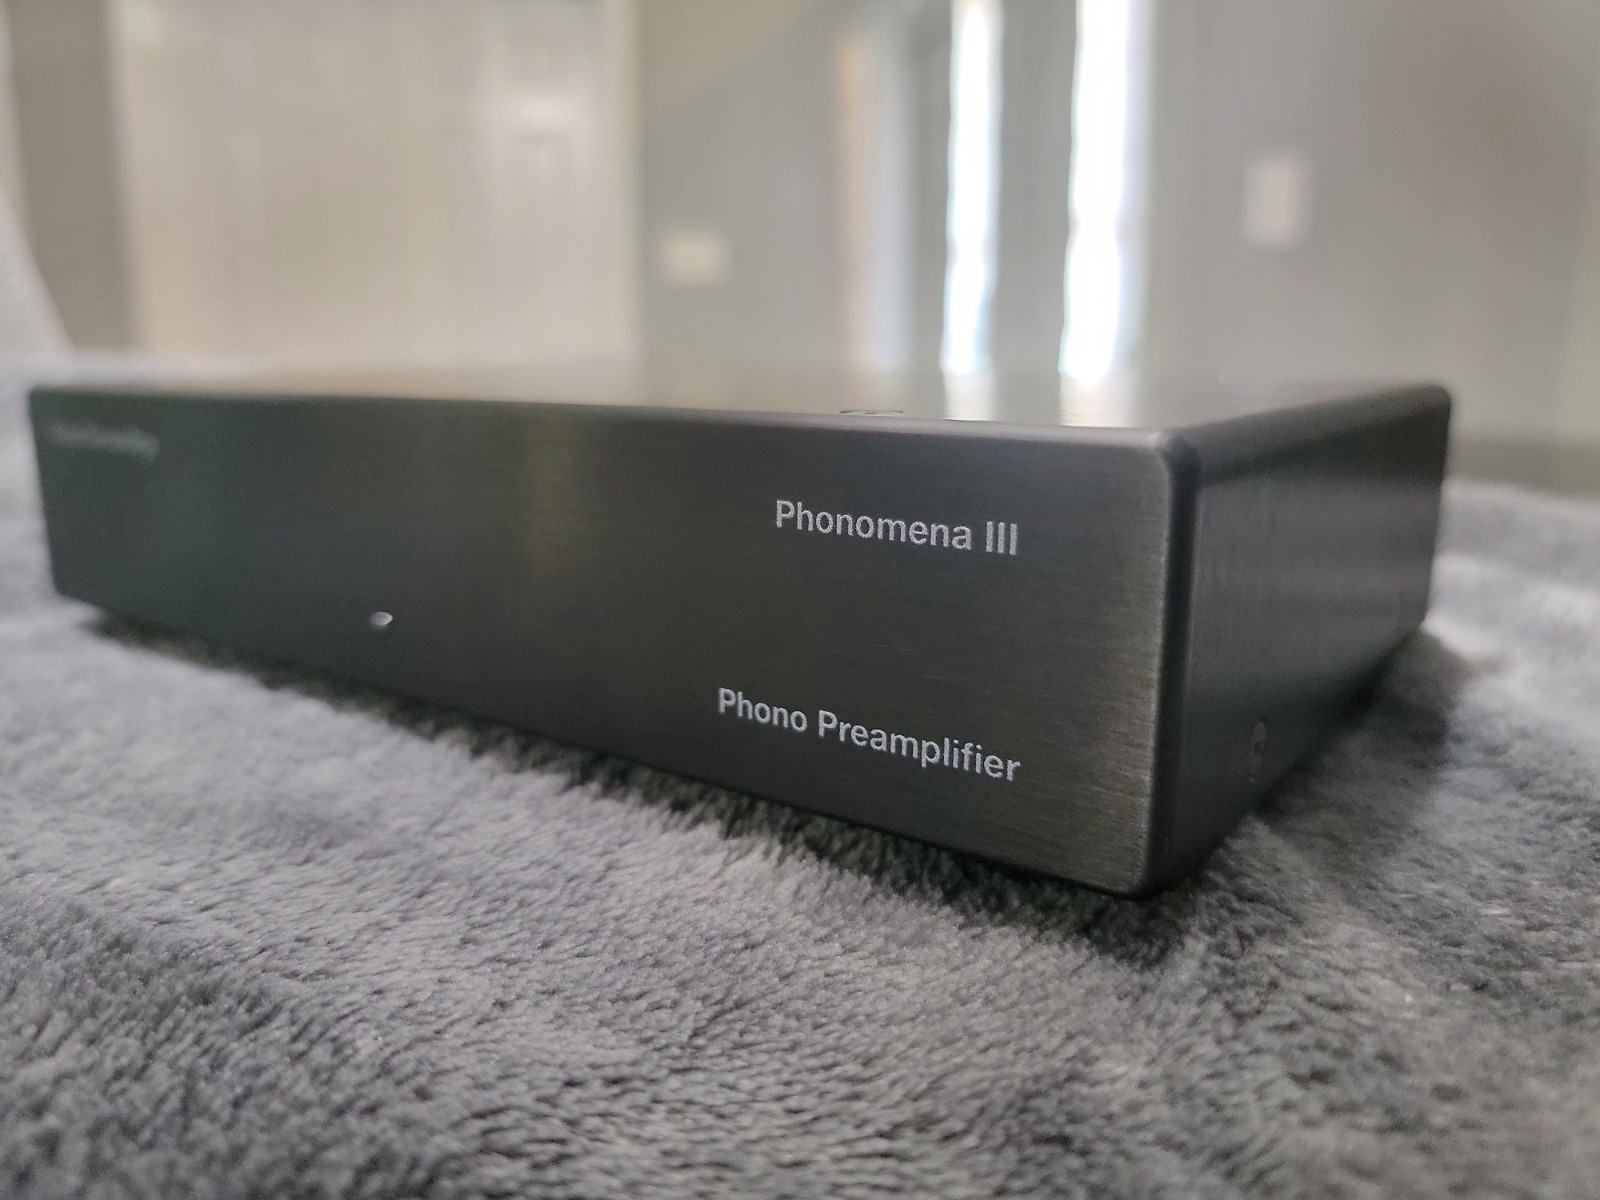 phonomena-iii-review